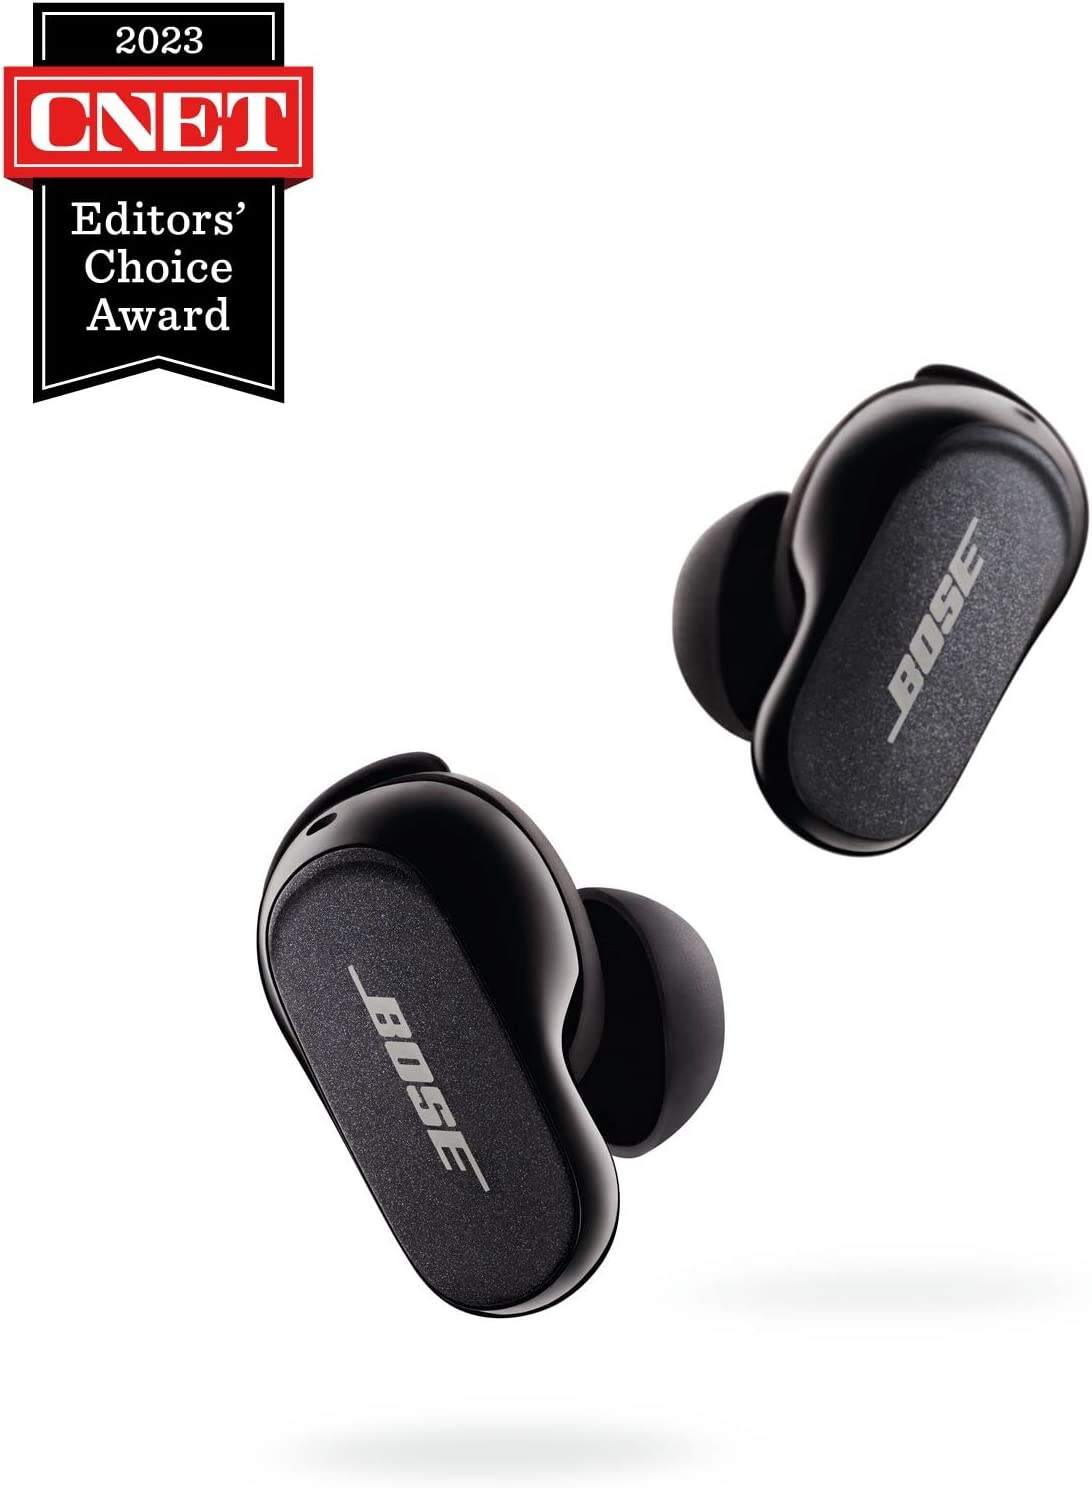 💥Liquidación solo el último día💥Nuevos auriculares Bose QuietComfort con cancelación de ruido II